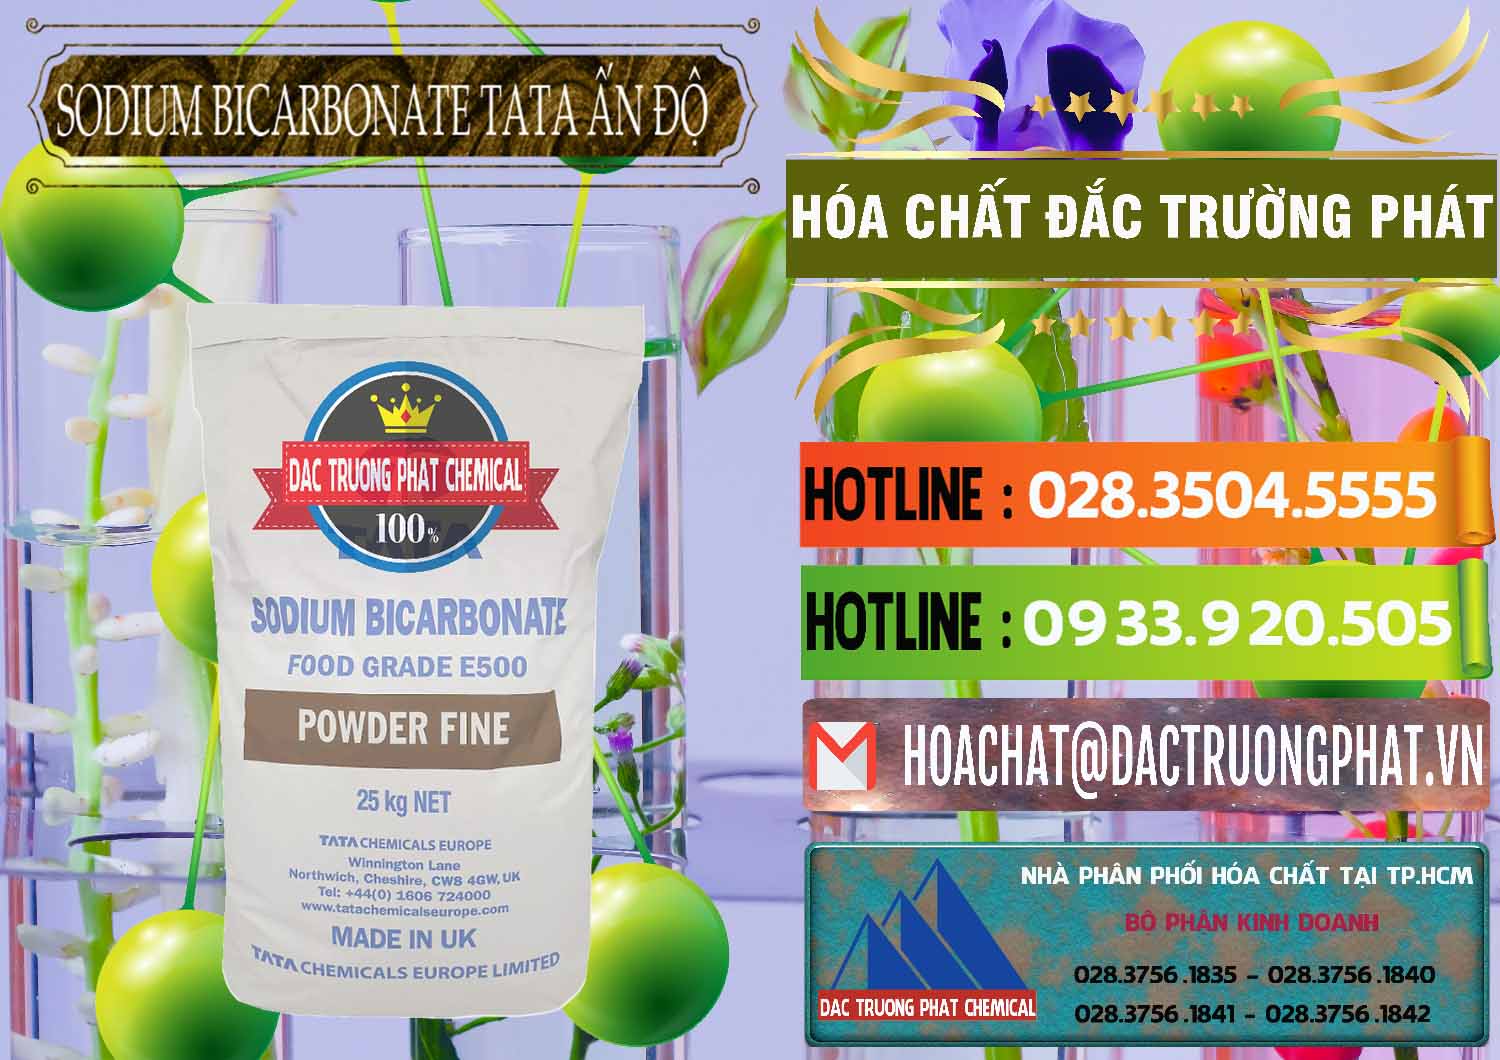 Kinh doanh - bán Sodium Bicarbonate – Bicar NaHCO3 E500 Thực Phẩm Food Grade Tata Ấn Độ India - 0261 - Đơn vị bán ( cung cấp ) hóa chất tại TP.HCM - cungcaphoachat.com.vn